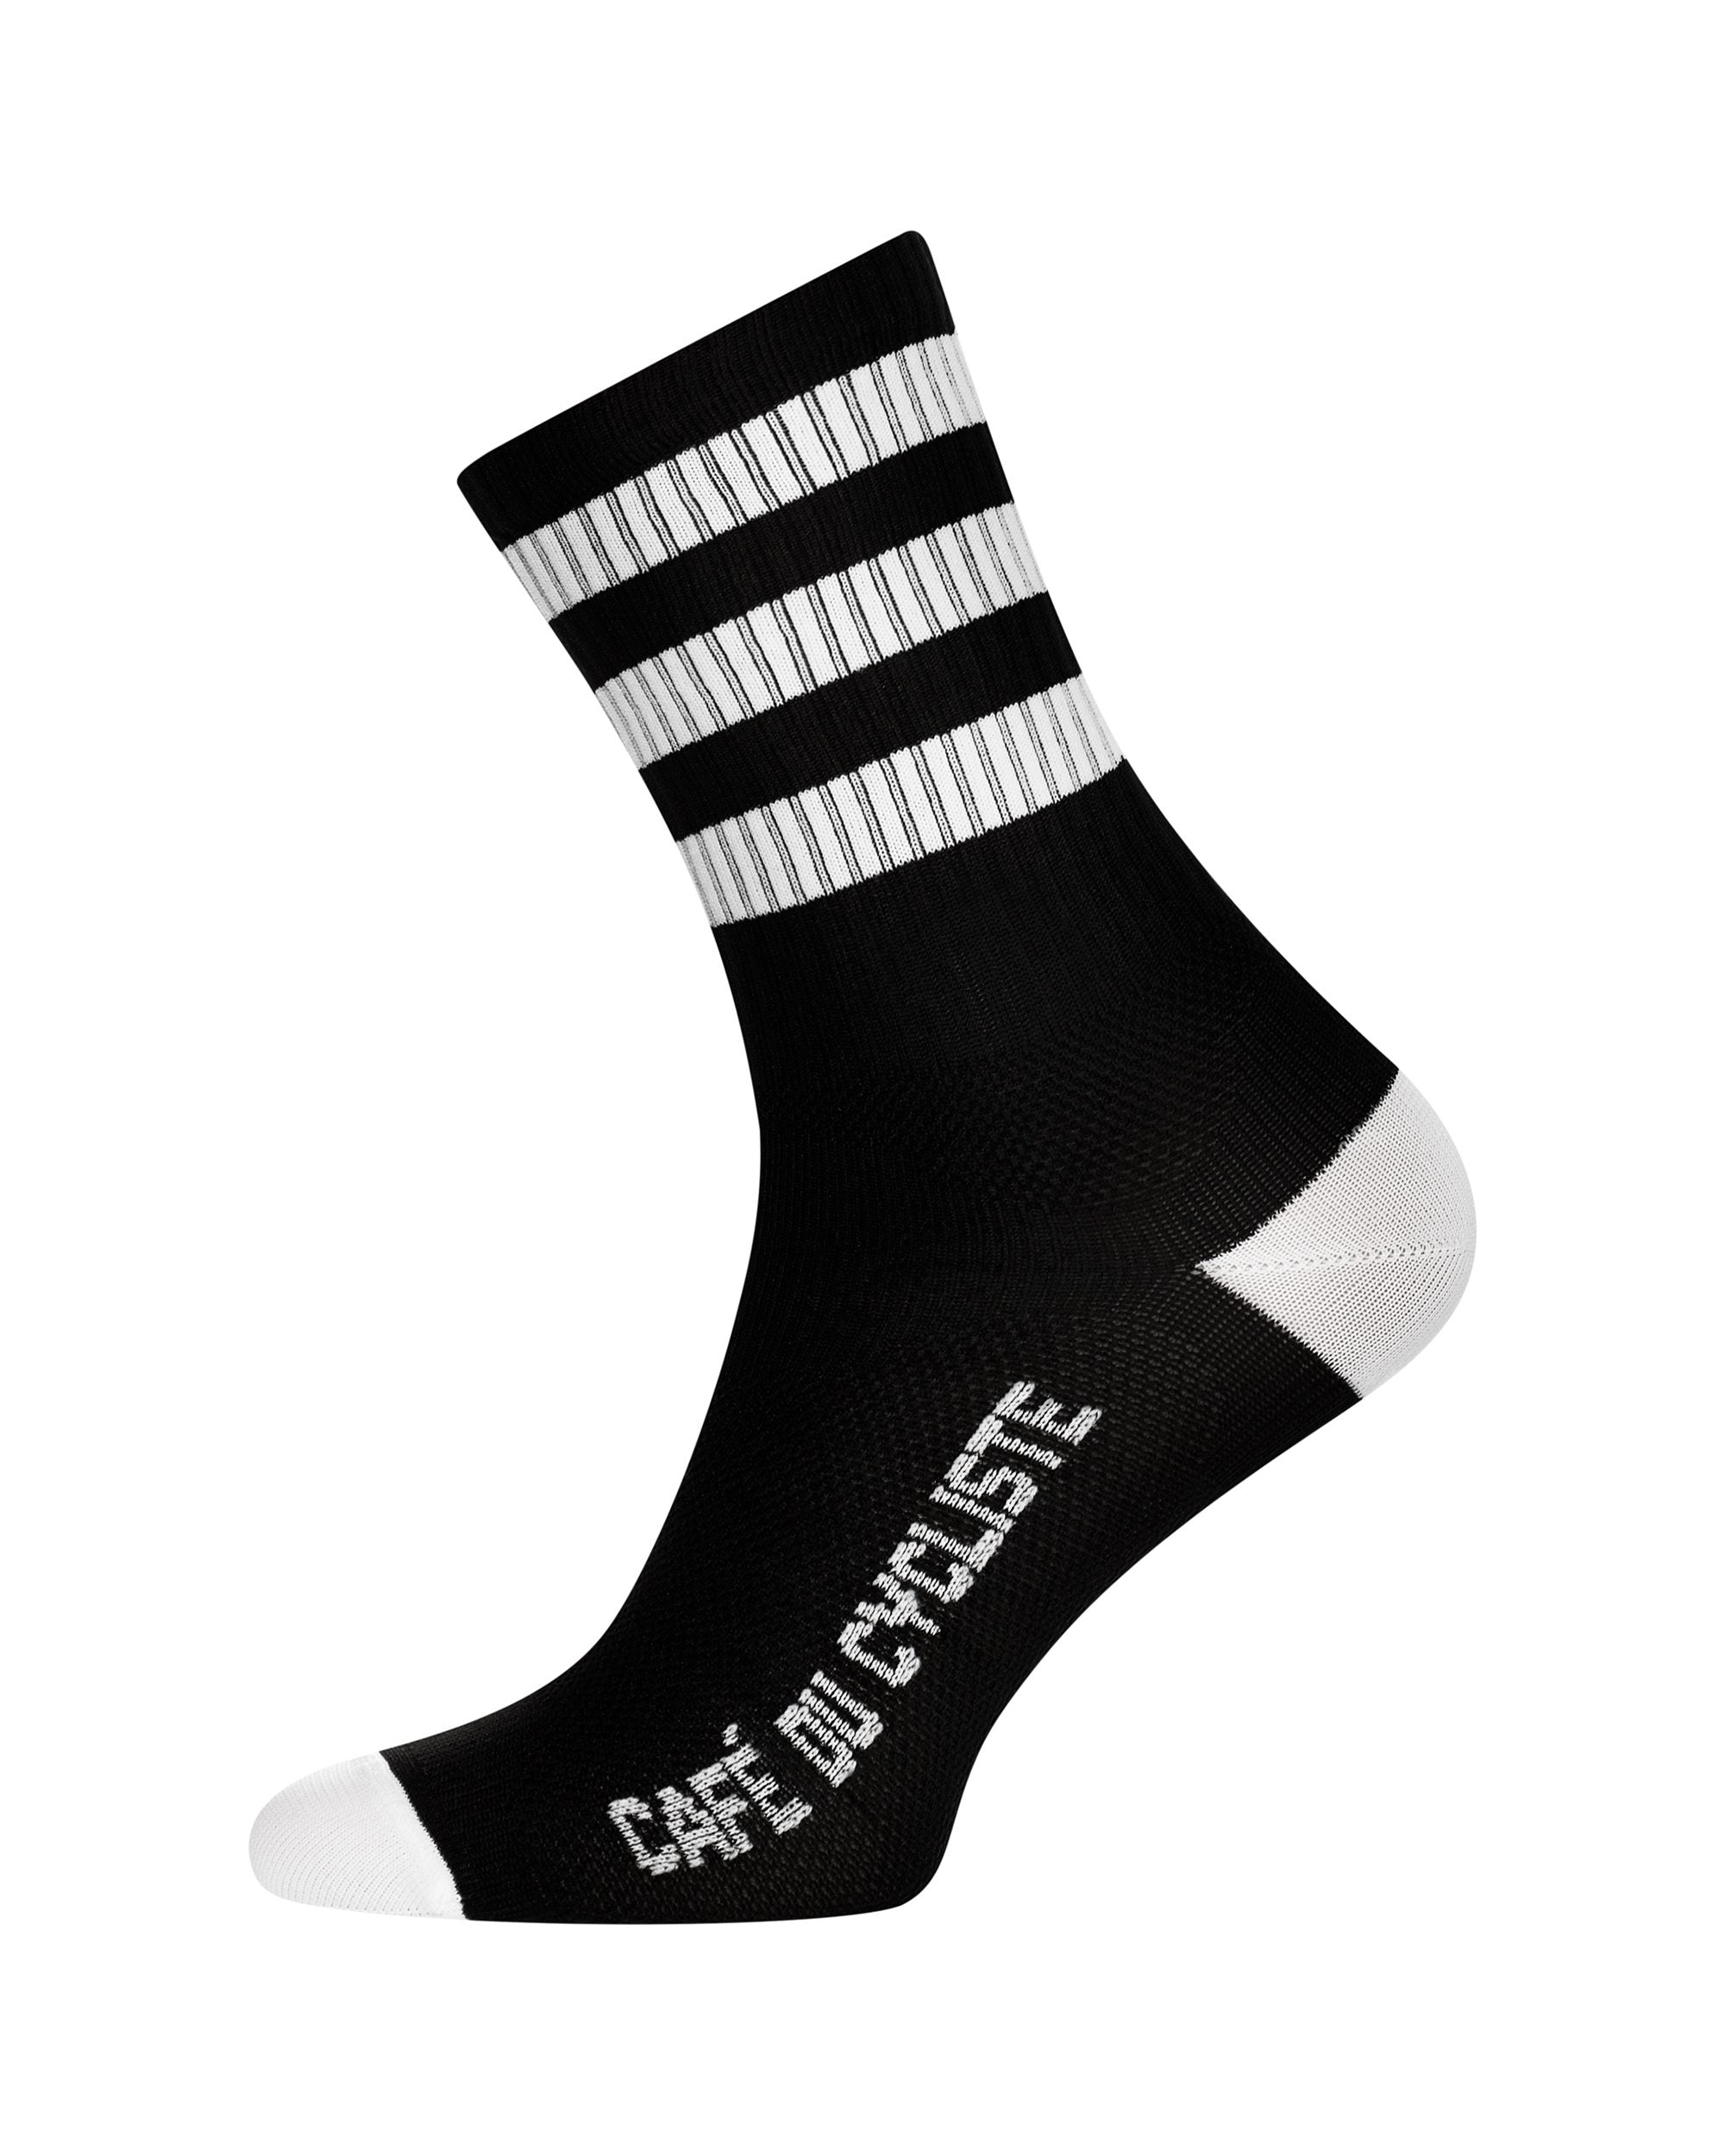 Skate Stripes Socks